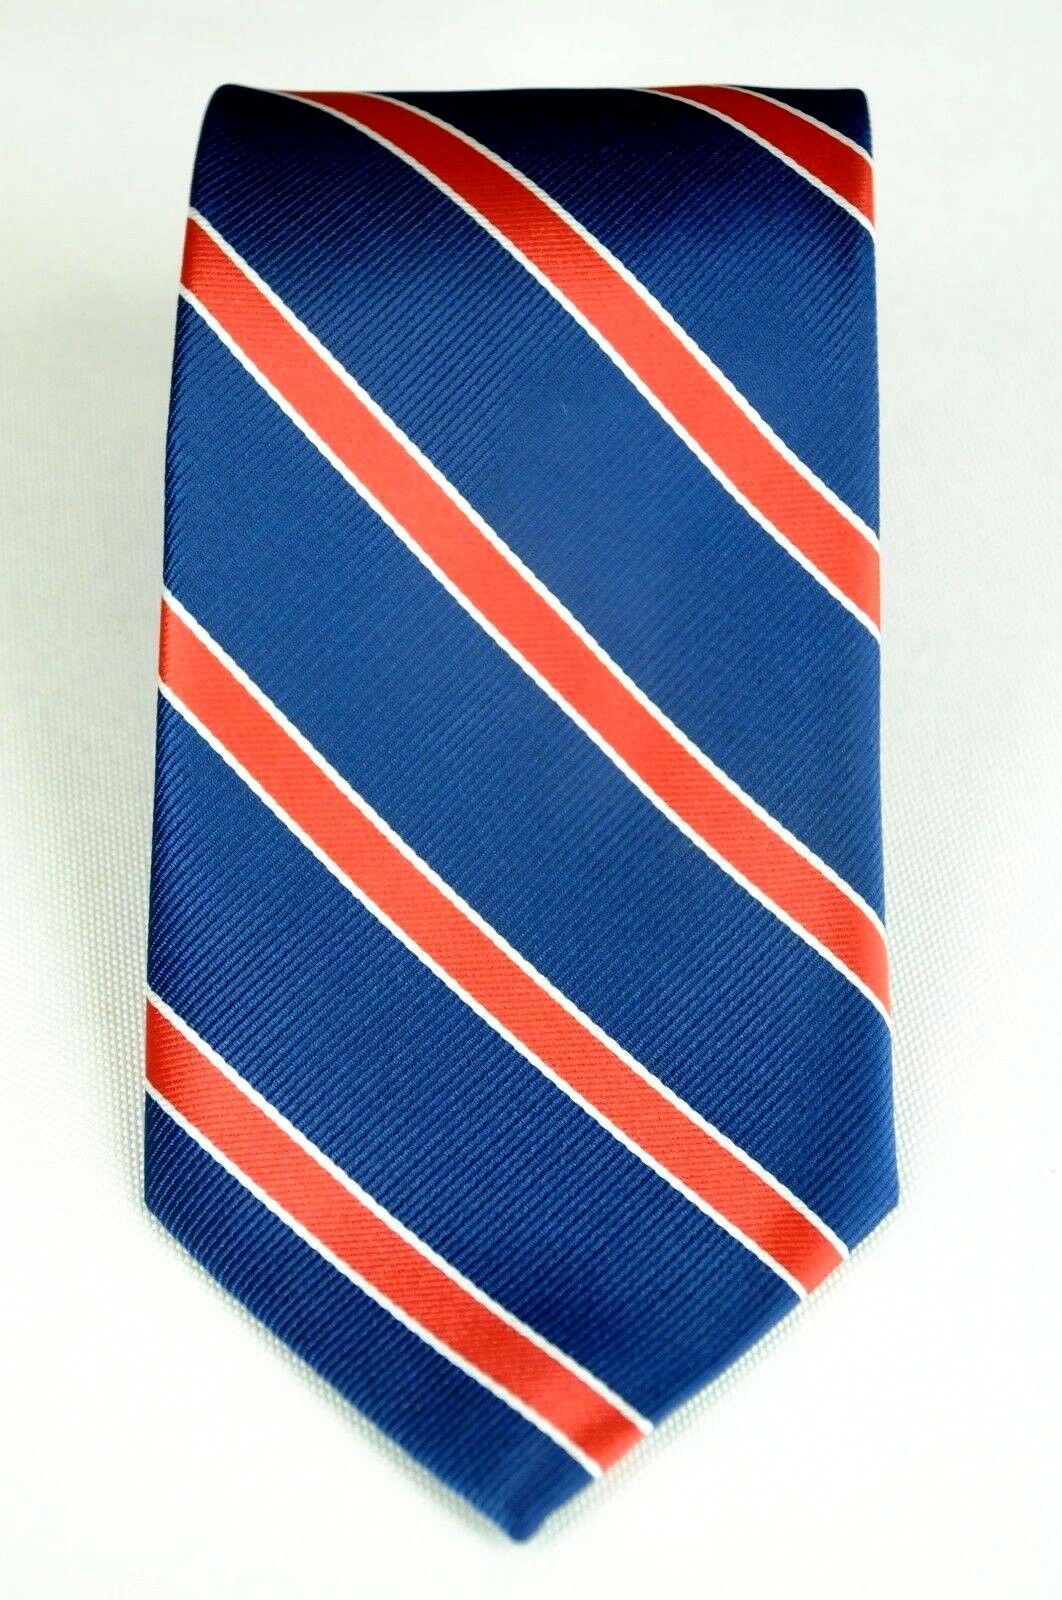 Lord R Colton Studio Tie - Navy & Red Striped Silk Necktie - $95 Retail ...